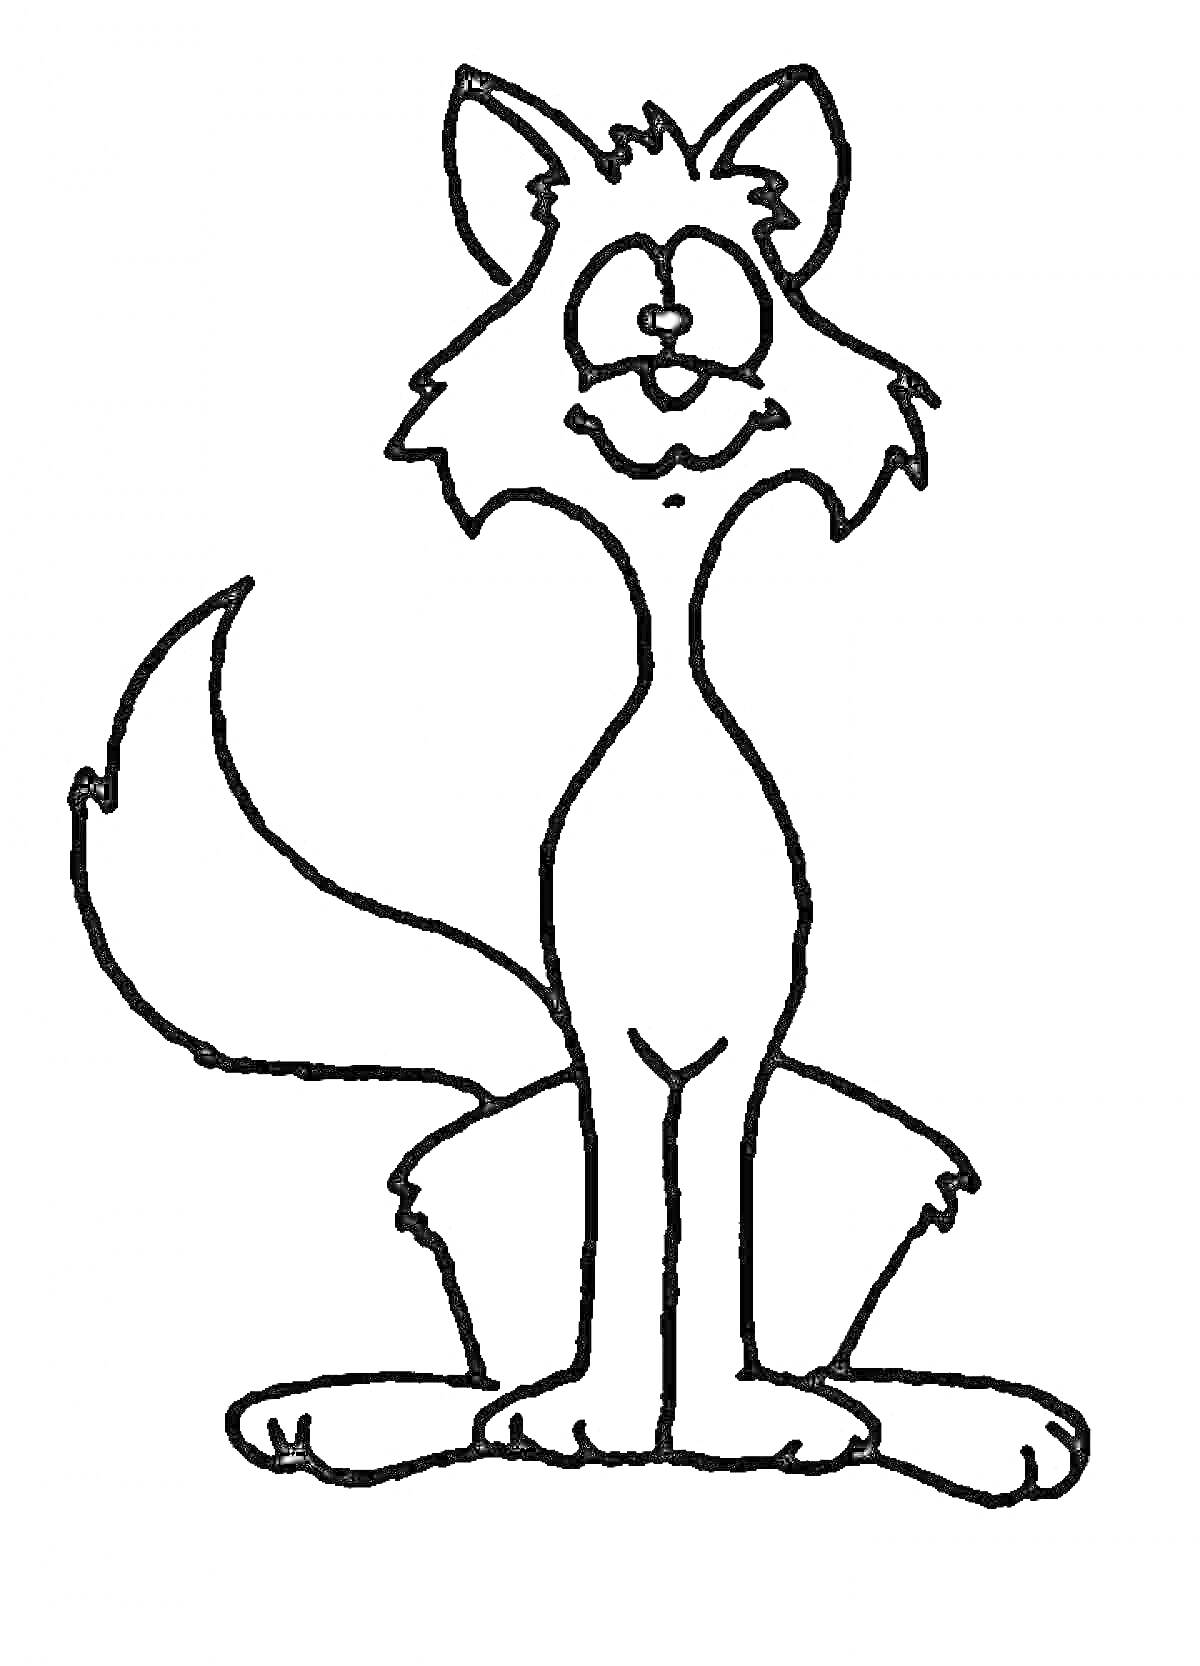 Раскраска Кошка с длинным хвостом, стоящая на задних лапах